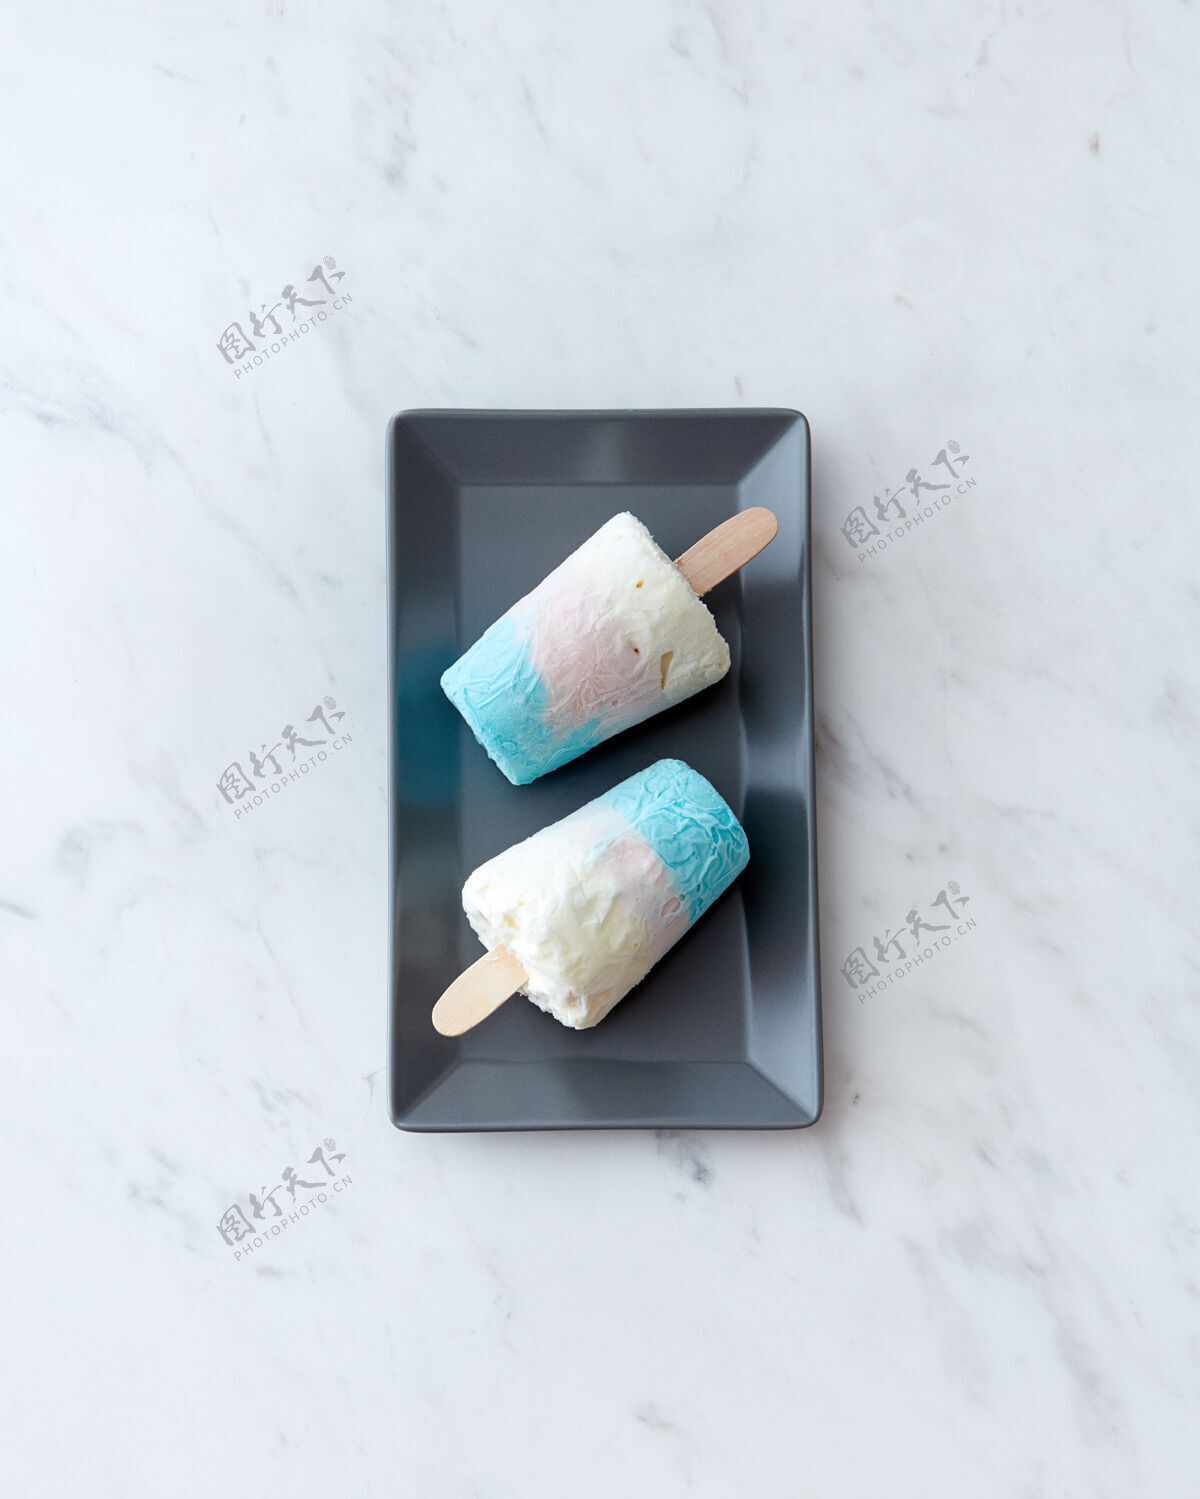 棒在一个黑色盘子里 两个自制的健康冰淇淋棒棒糖放在一张灰色大理石桌子上 上面放着一份空间冷甜点平底躺下草莓汽水冰